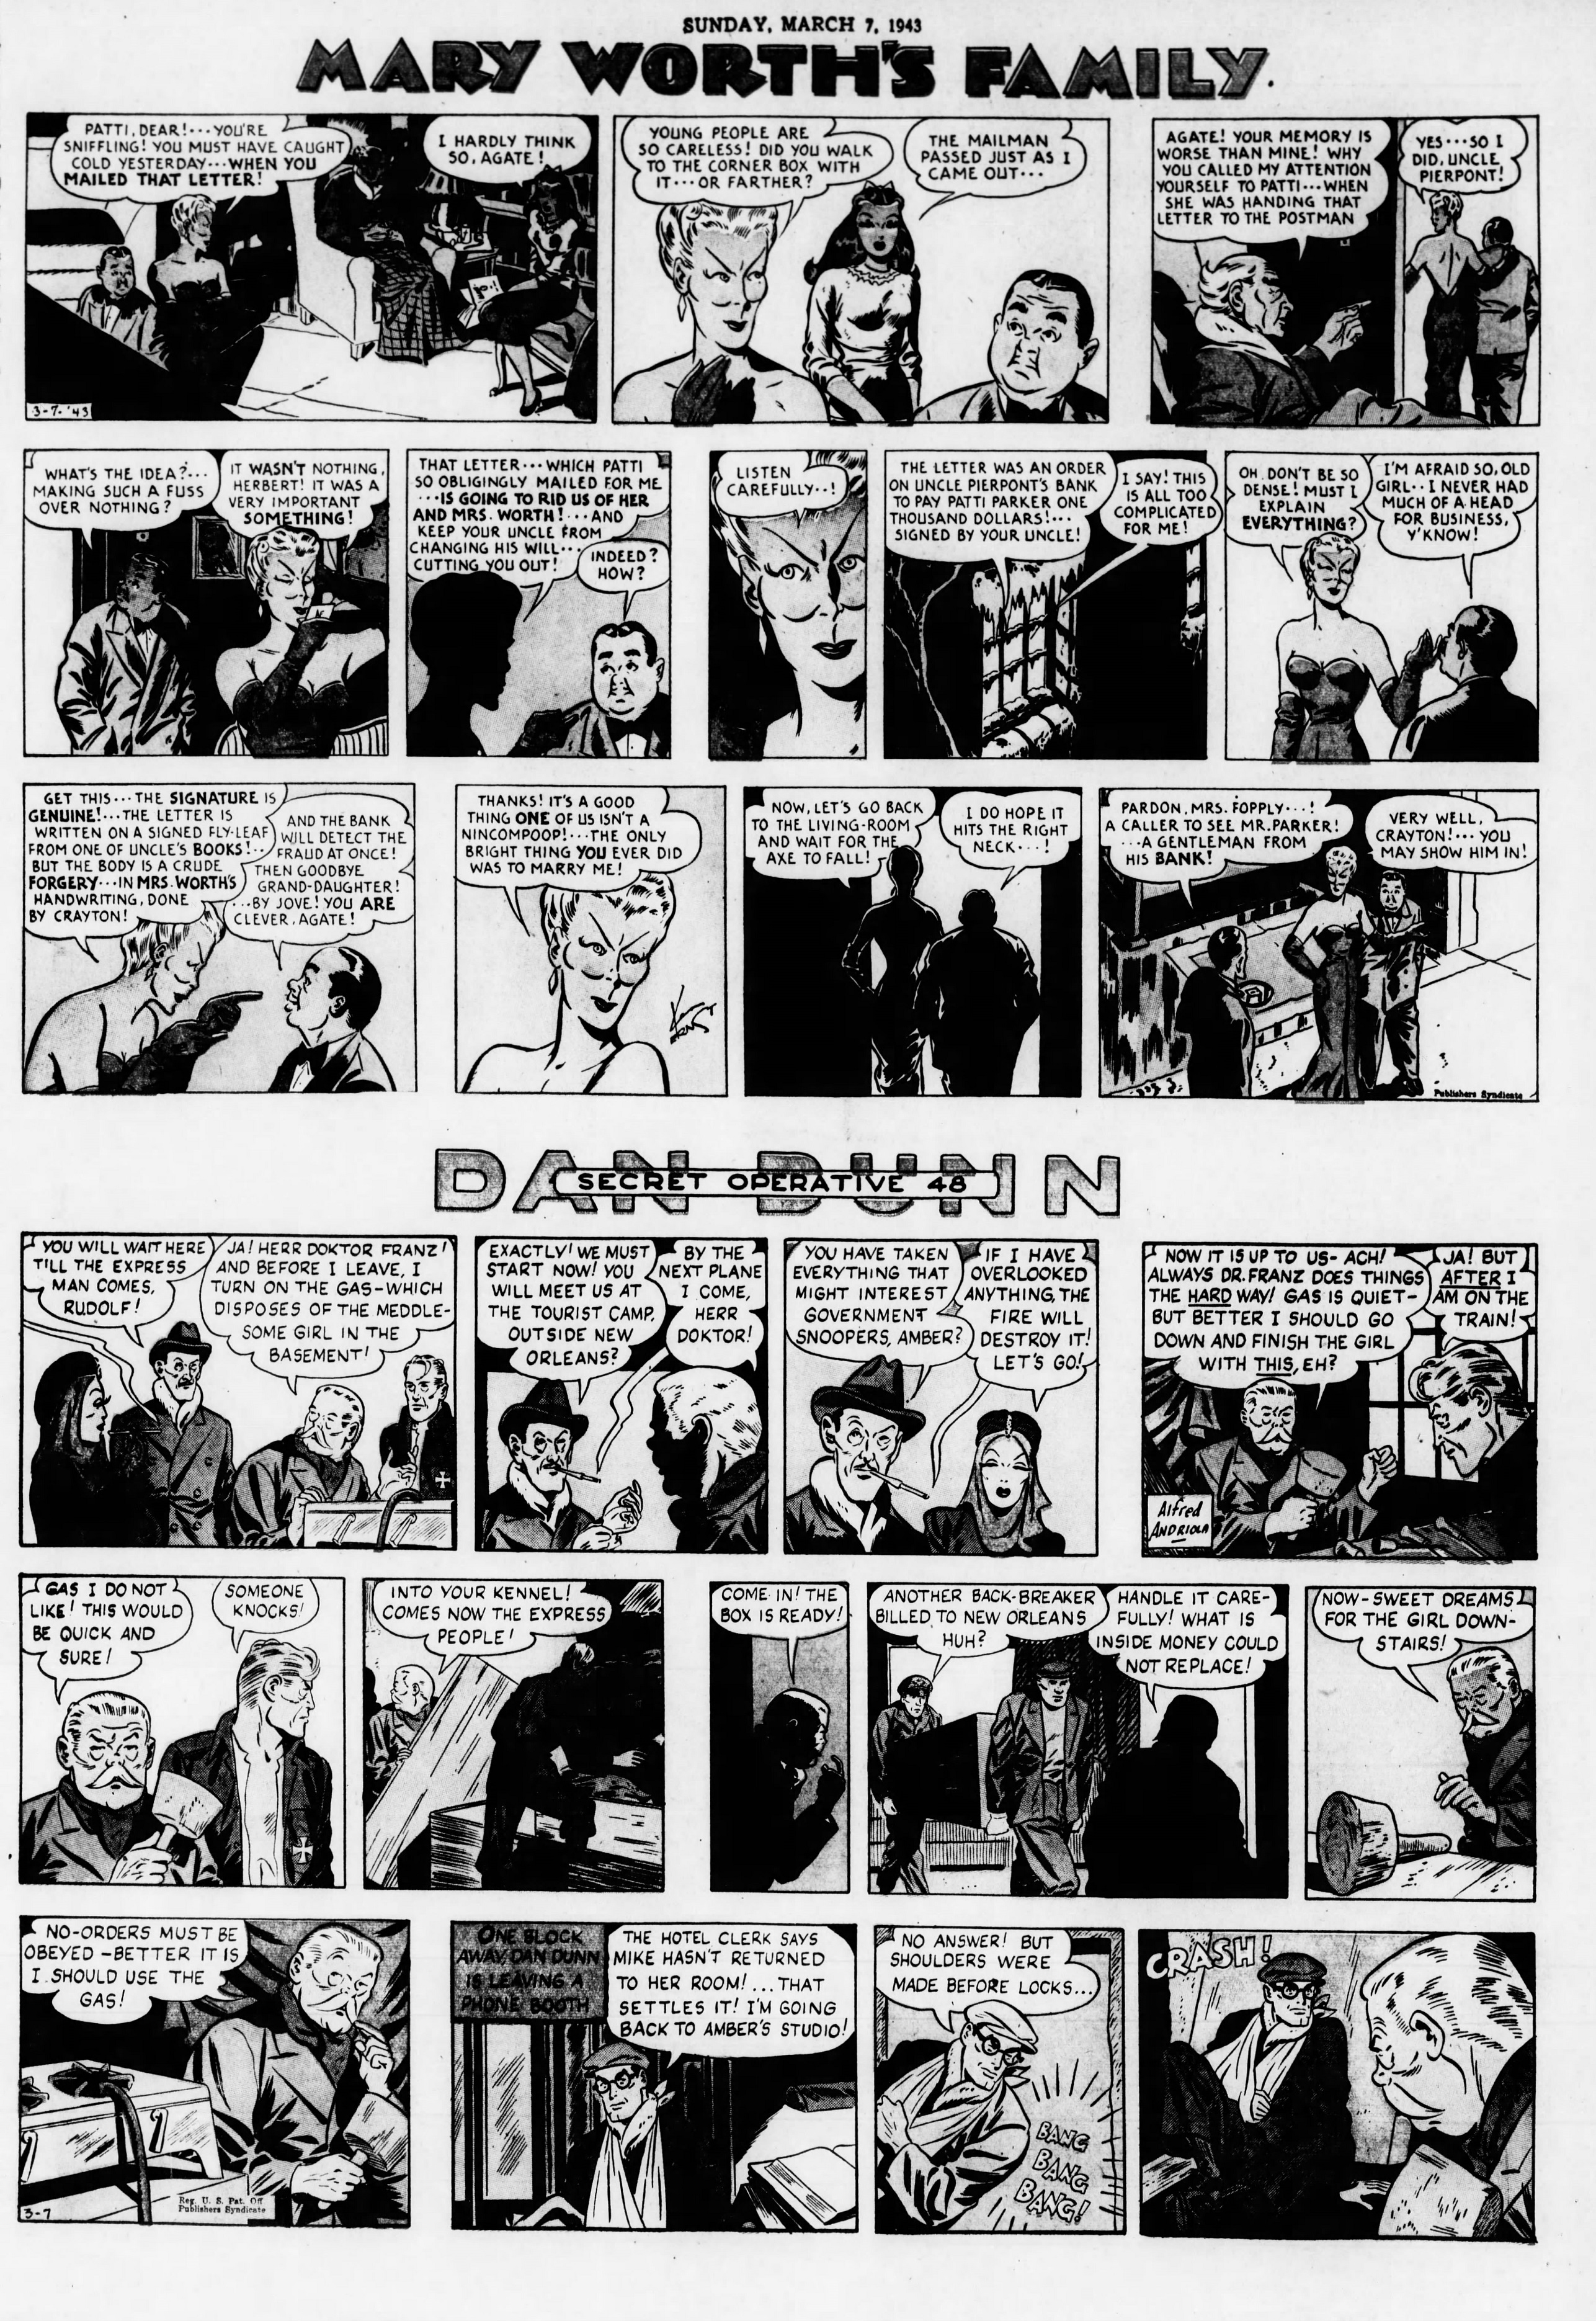 The_Brooklyn_Daily_Eagle_Sun__Mar_7__1943_(8).jpg